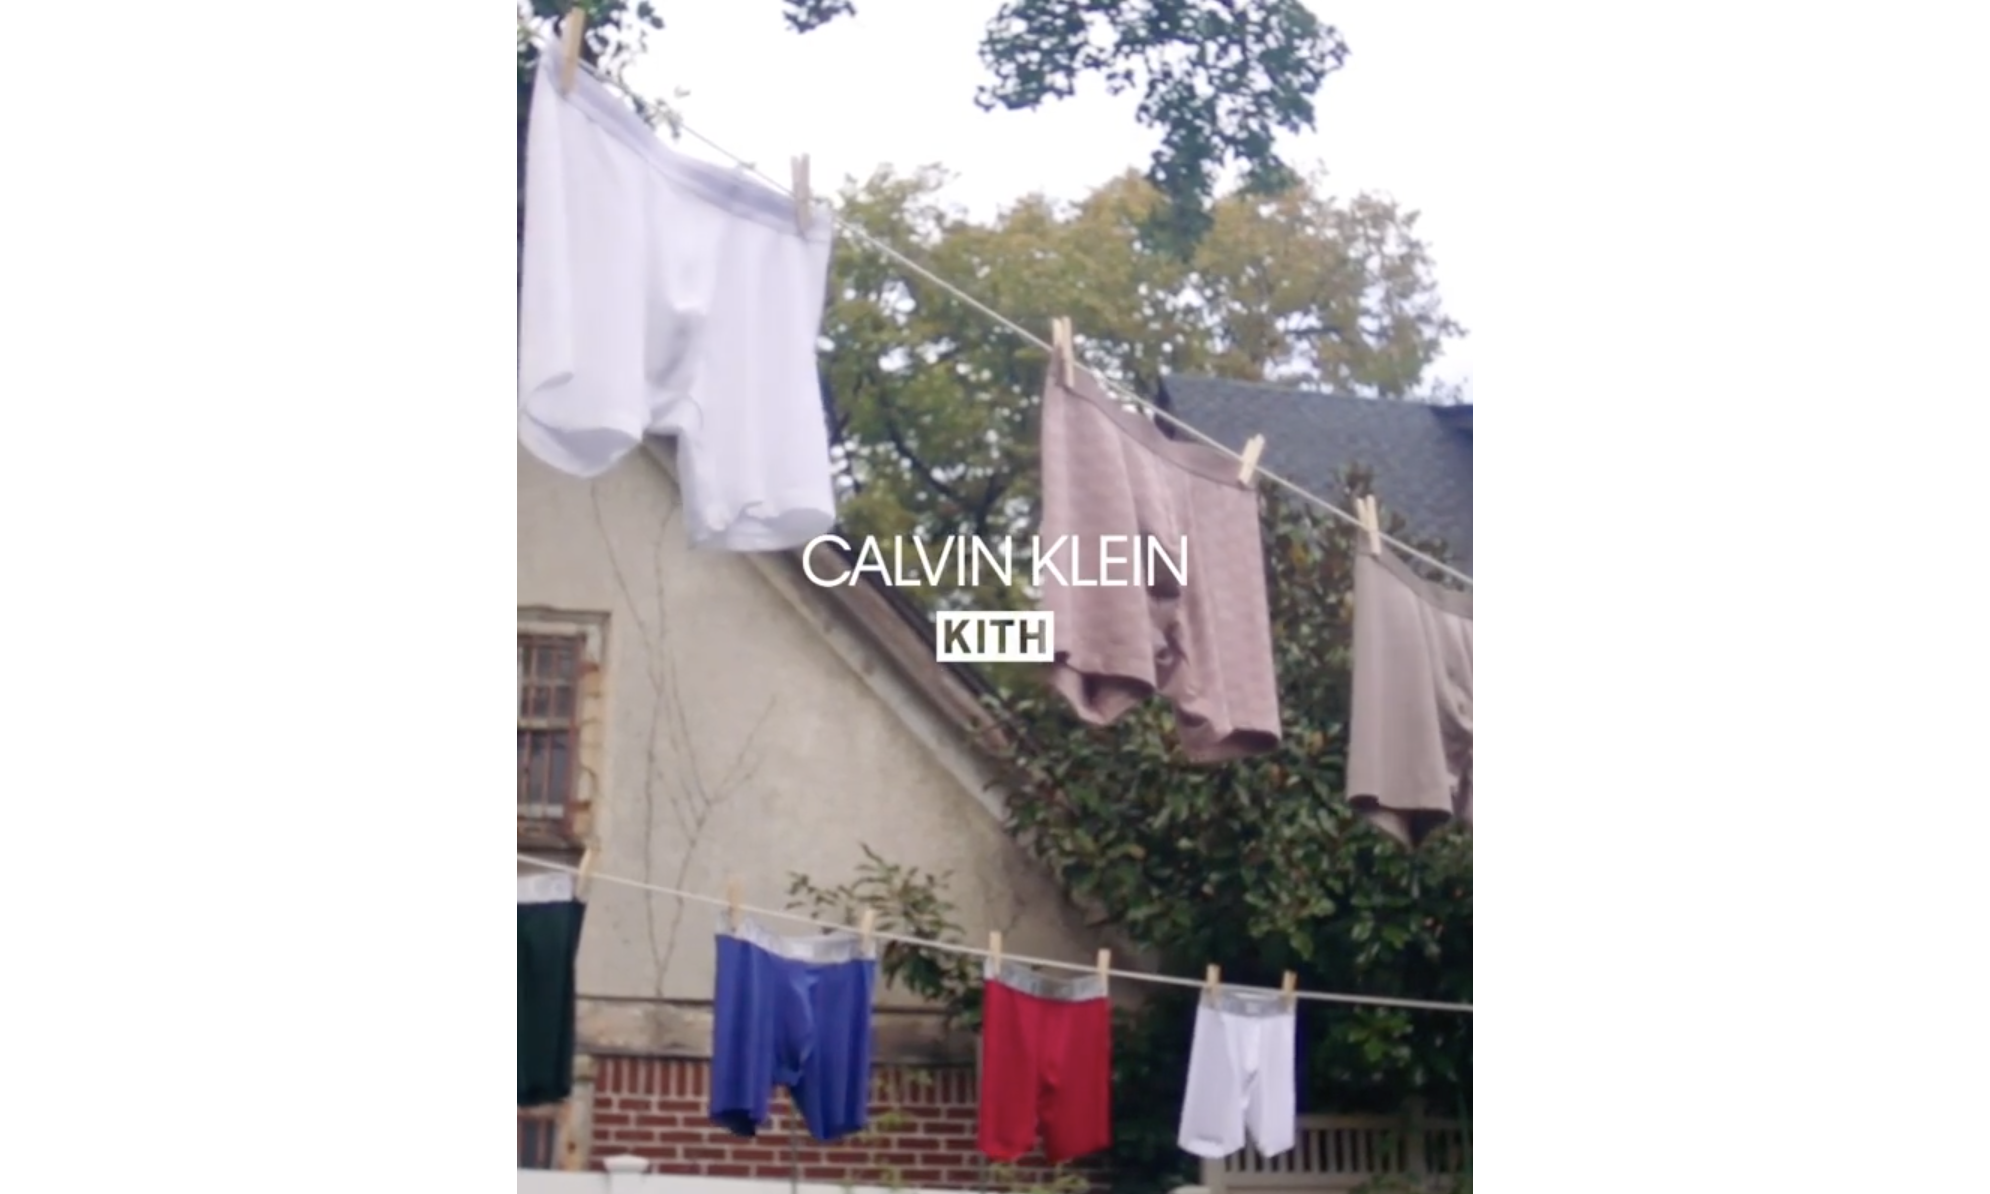 Ronnie Fieg 发布 CALVIN KLEIN x KITH 合作预告